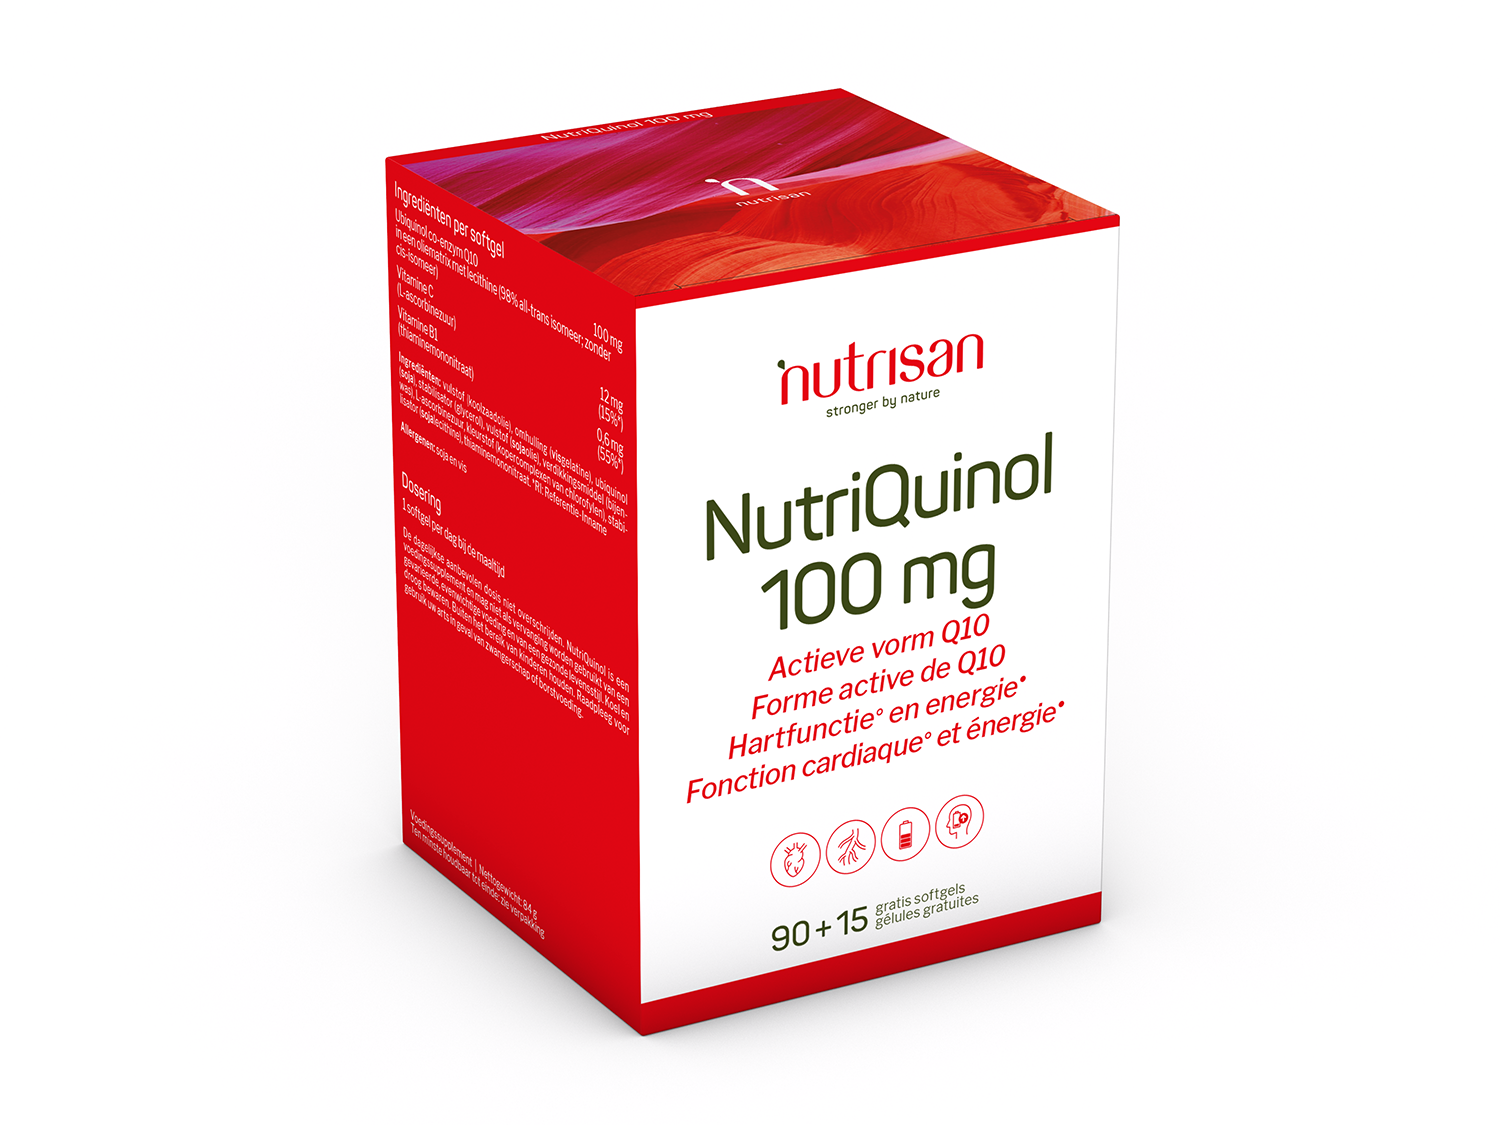 NutriQuinol (100 mg) - 90 softgels + 15 gratis 